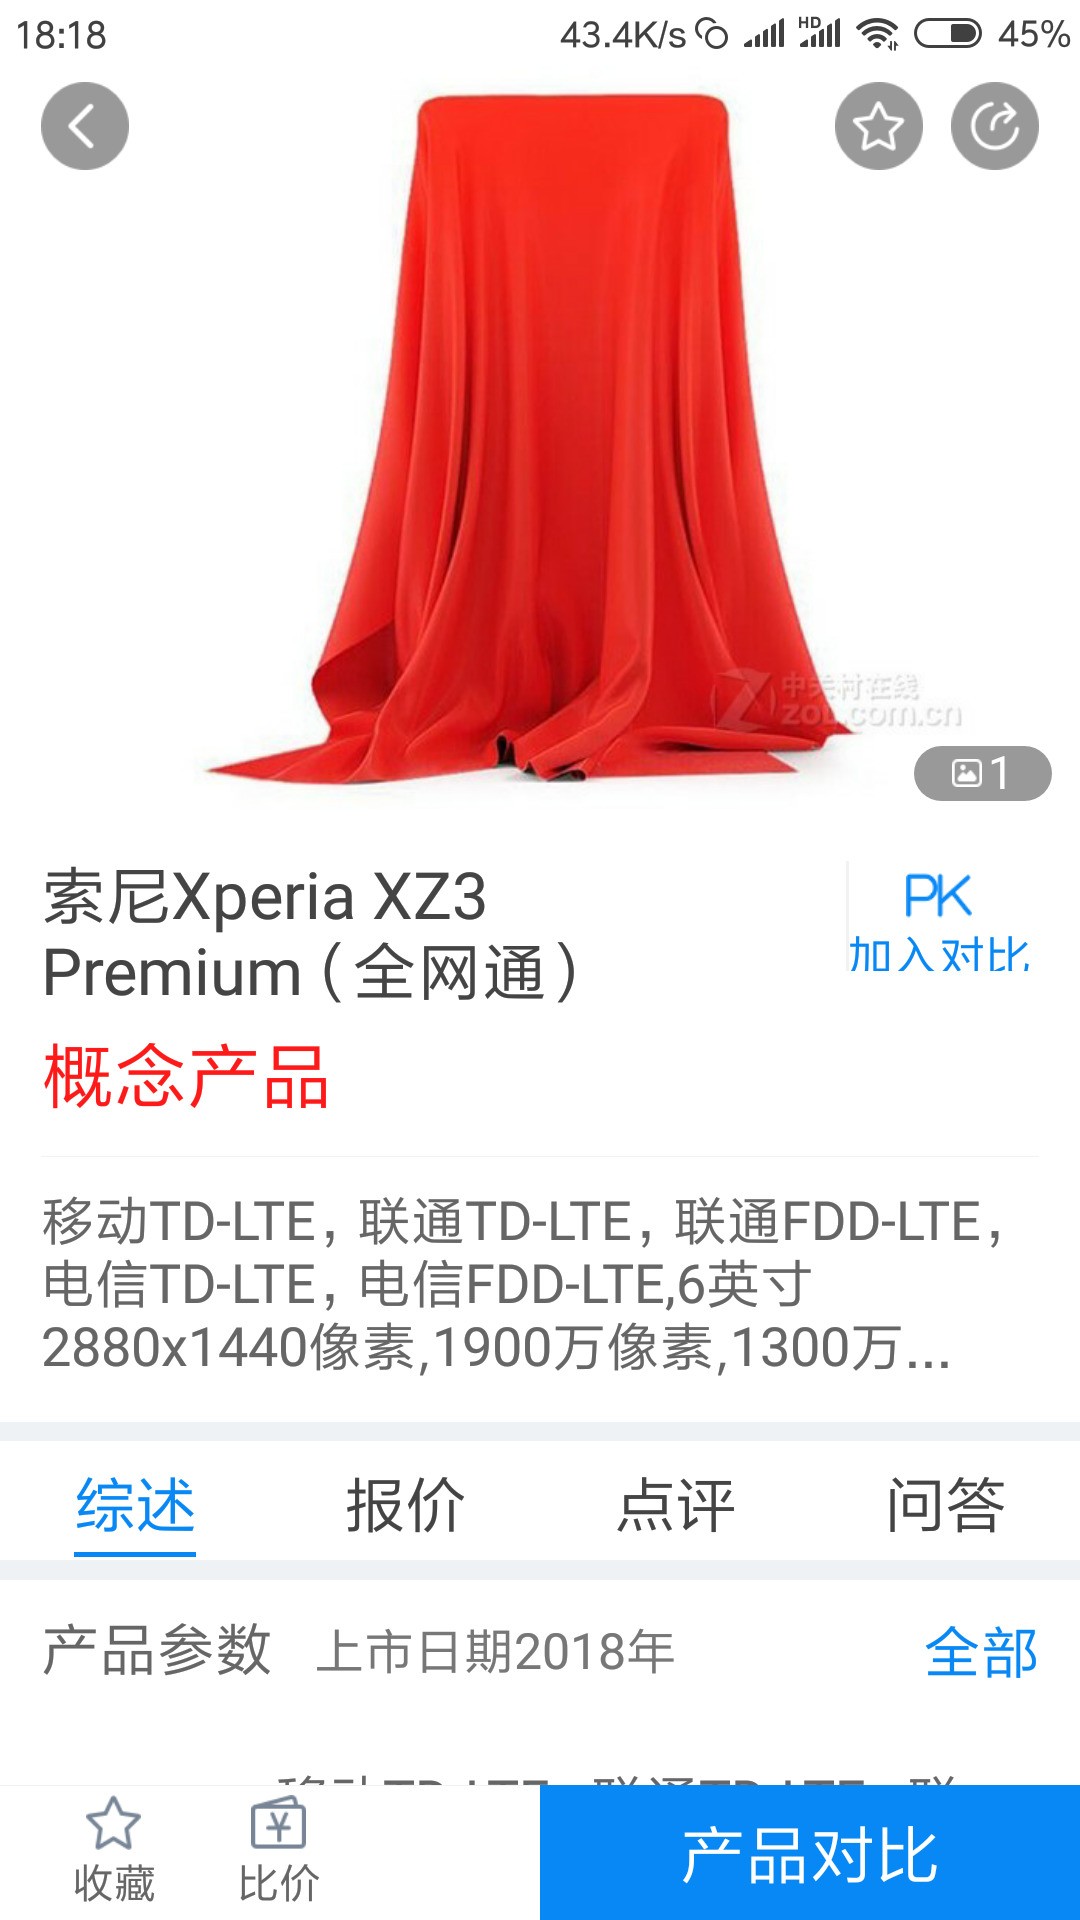 索尼Xperia XZ3 Premium信号不好?